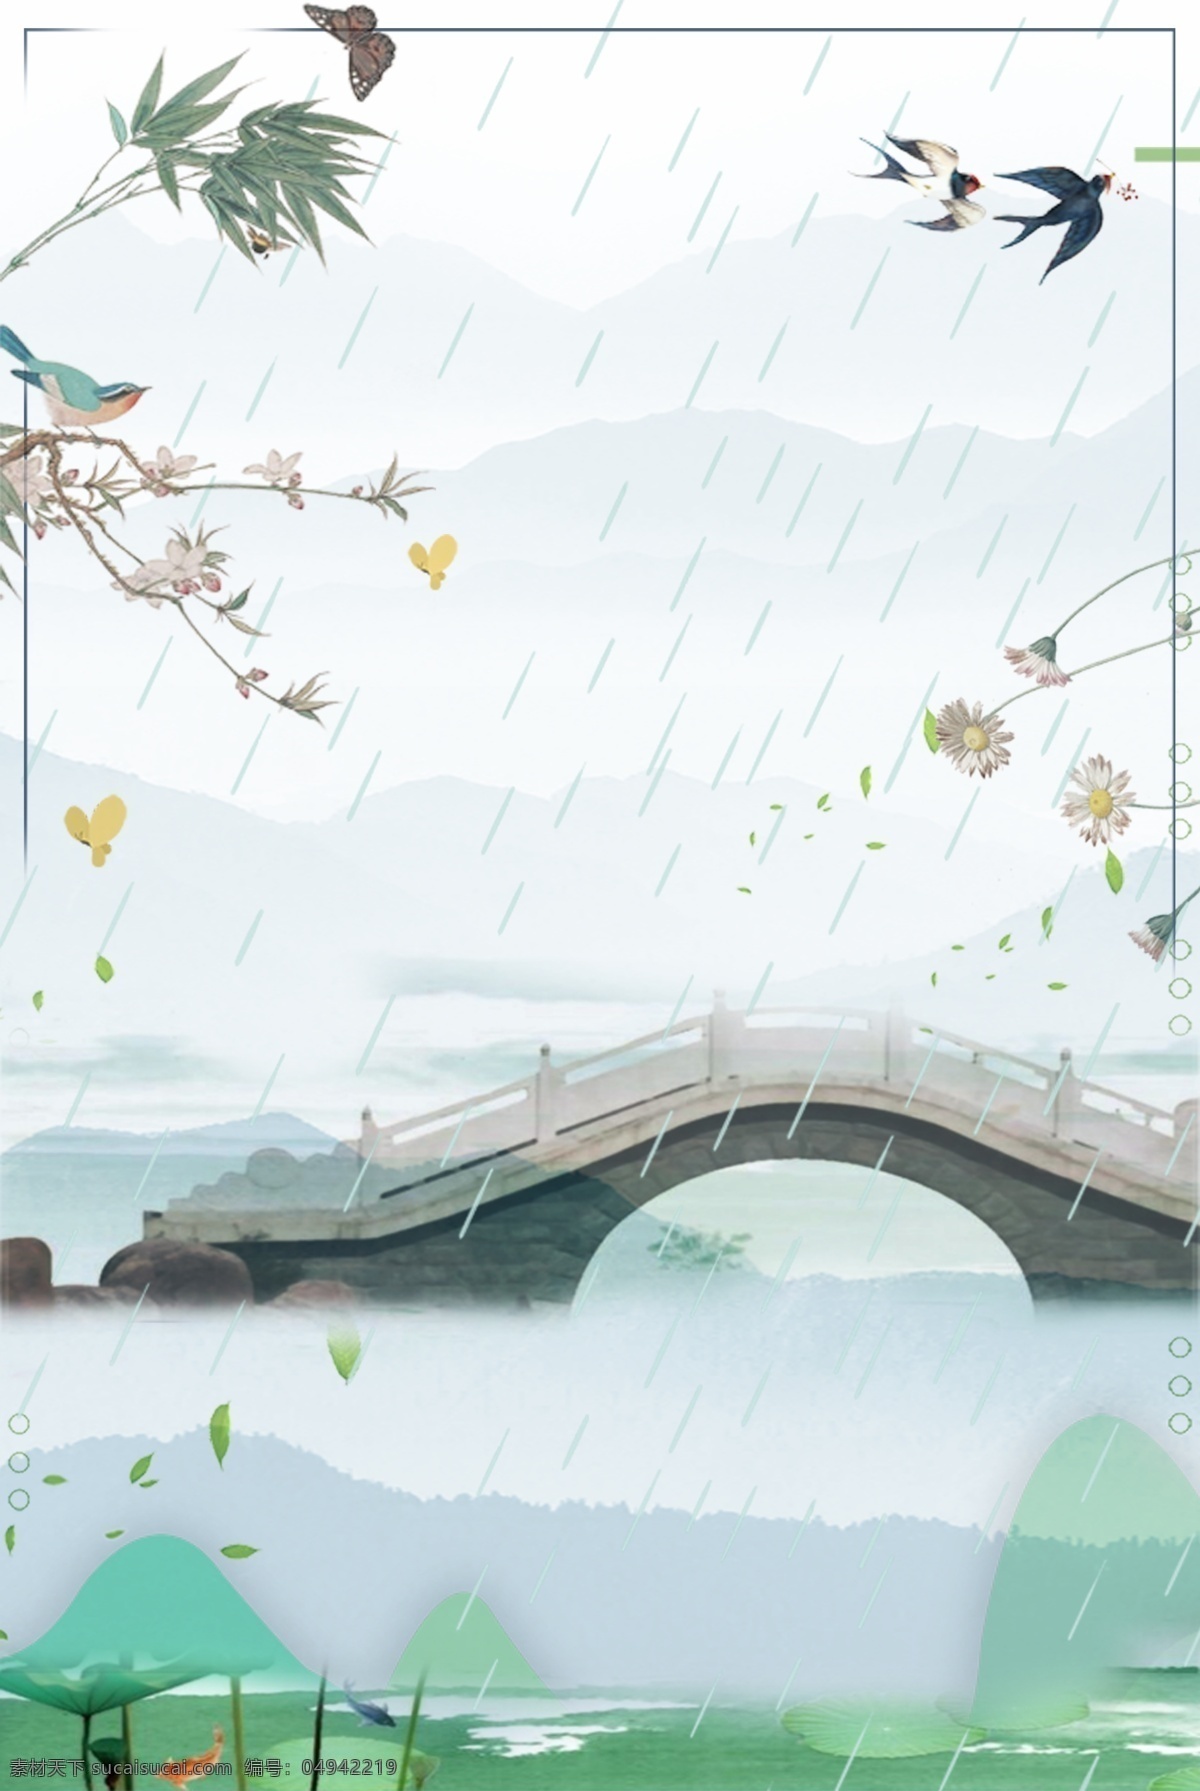 清明节 雨水 湖水 海报 背景 树枝 白鹭 群山 叶子 边框 psd分层 海报背景